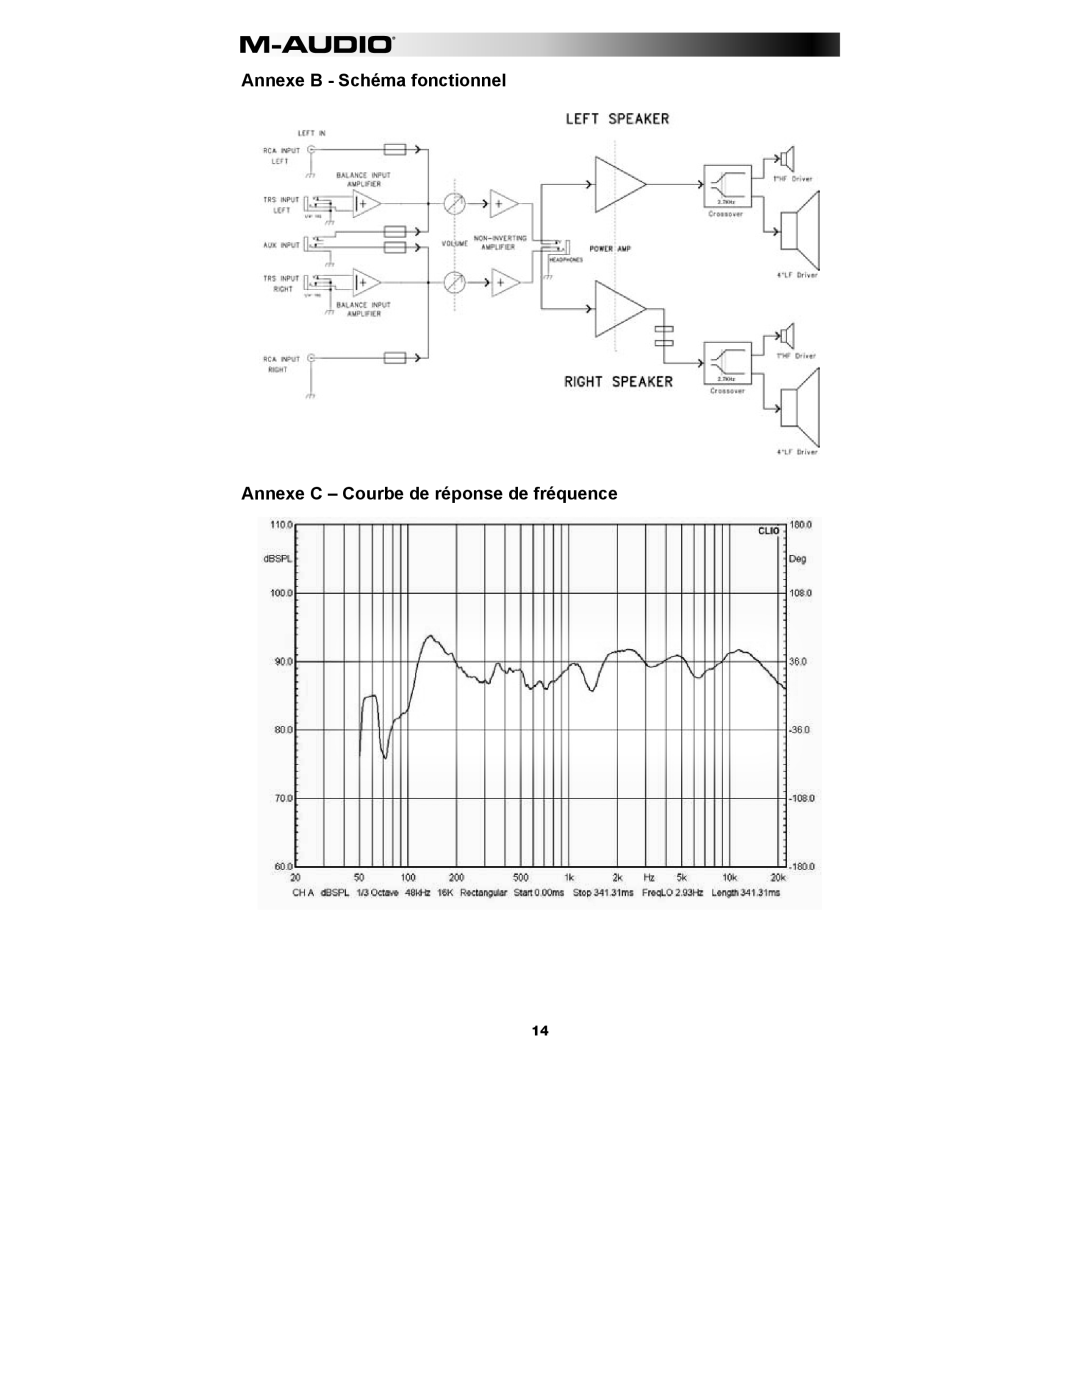 M-Audio AV 40 manual Annexe B - Schéma fonctionnel, Annexe C - Courbe de réponse de fréquence 